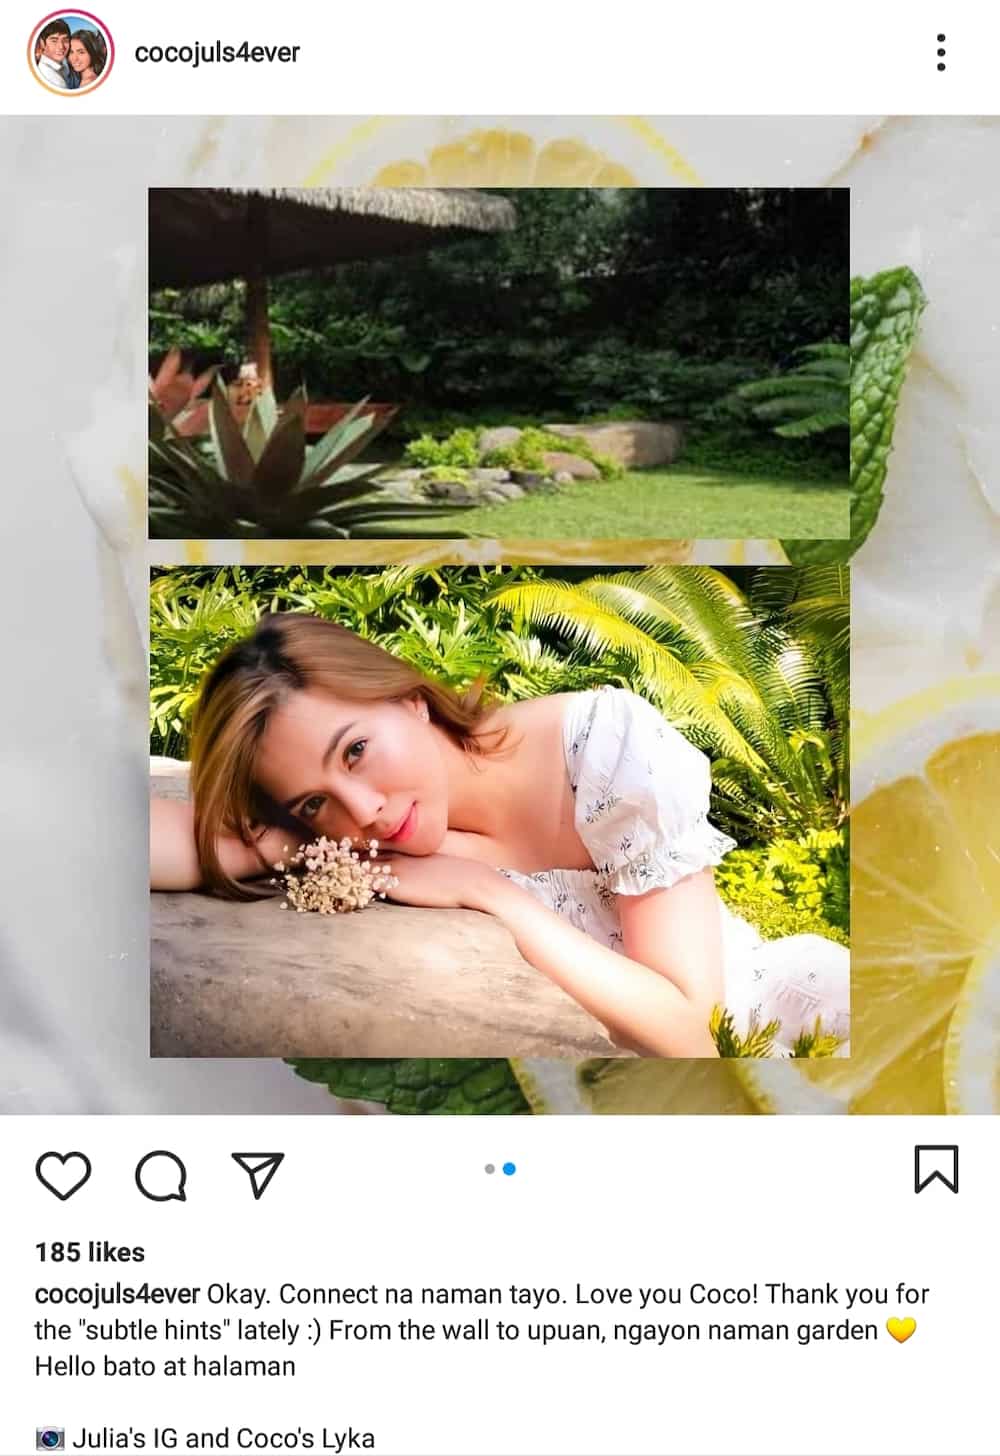 CocoJul fan account posts several similar garden photos of Julia Montes, Coco Martin